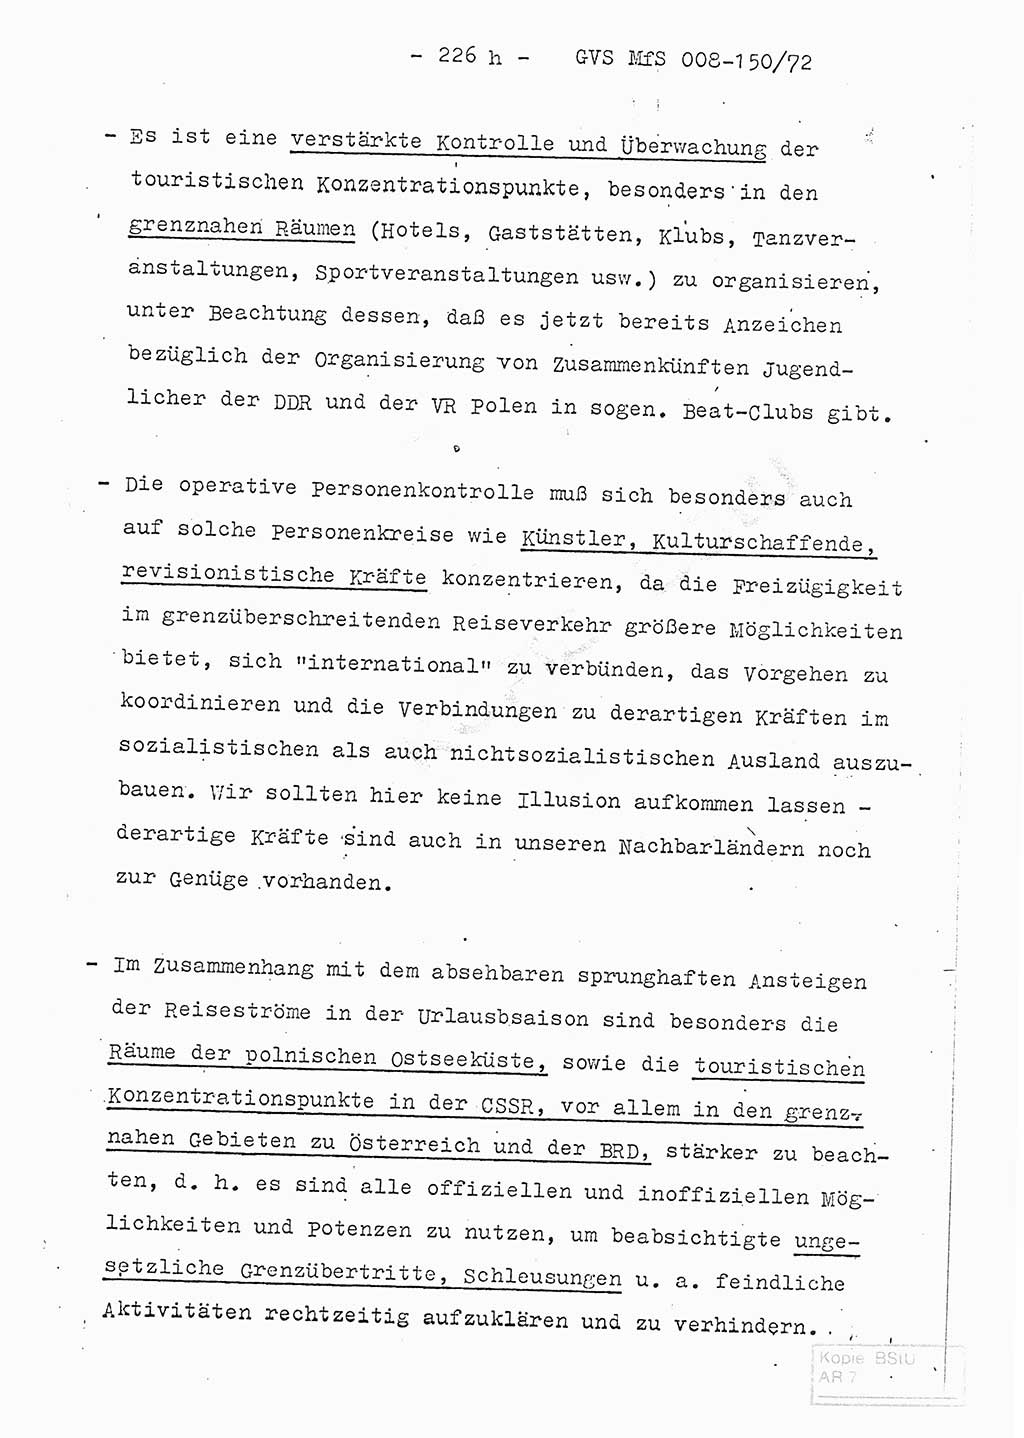 Referat (Entwurf) des Genossen Minister (Generaloberst Erich Mielke) auf der Dienstkonferenz 1972, Ministerium für Staatssicherheit (MfS) [Deutsche Demokratische Republik (DDR)], Der Minister, Geheime Verschlußsache (GVS) 008-150/72, Berlin 25.2.1972, Seite 226/8 (Ref. Entw. DK MfS DDR Min. GVS 008-150/72 1972, S. 226/8)